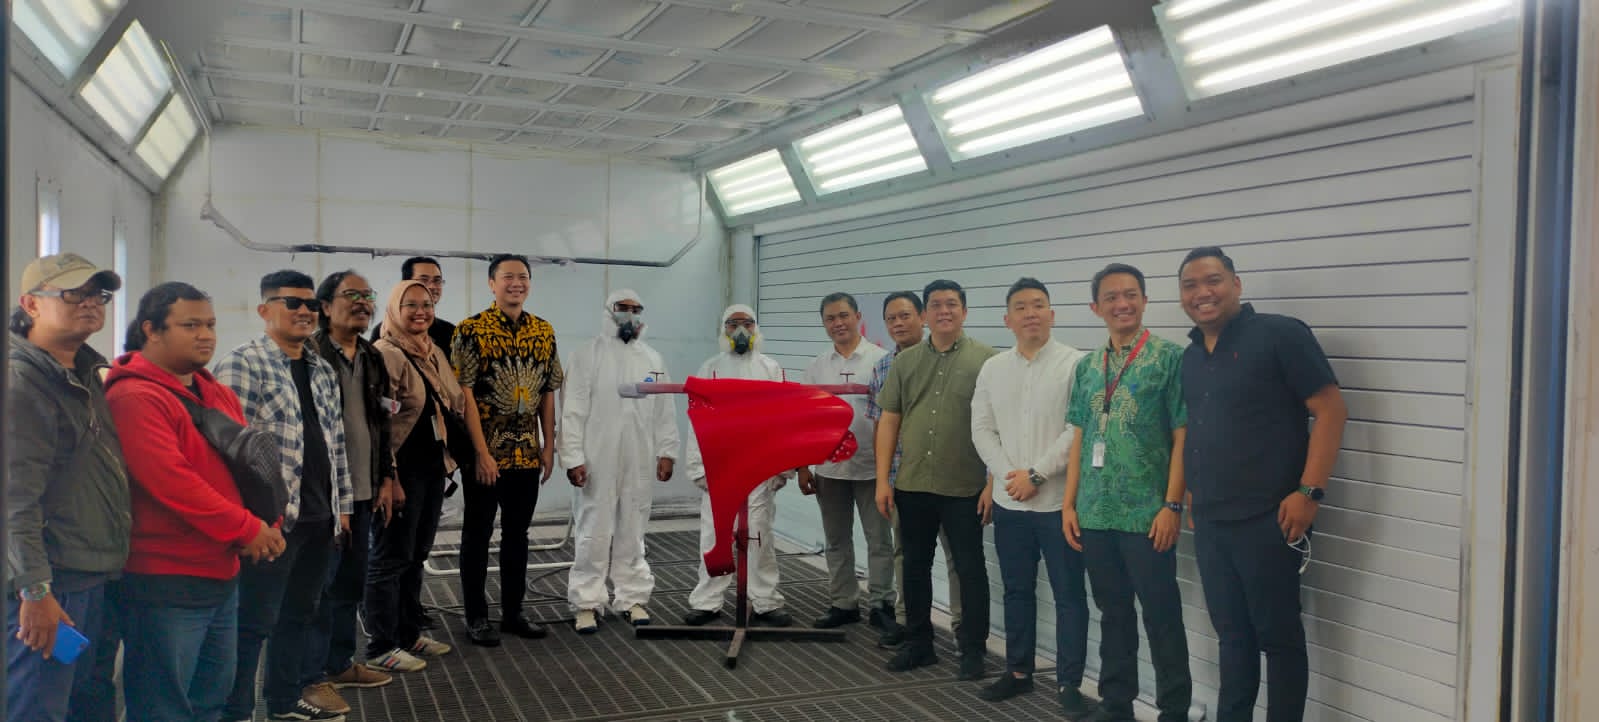 Haris Prasetya (Baju batuk kuning); Buddy Sukmawan (Baju Putih); Albert Yonathans (Baju Hijau) dari Auto2000 dalam experience media forum Malang Raya.